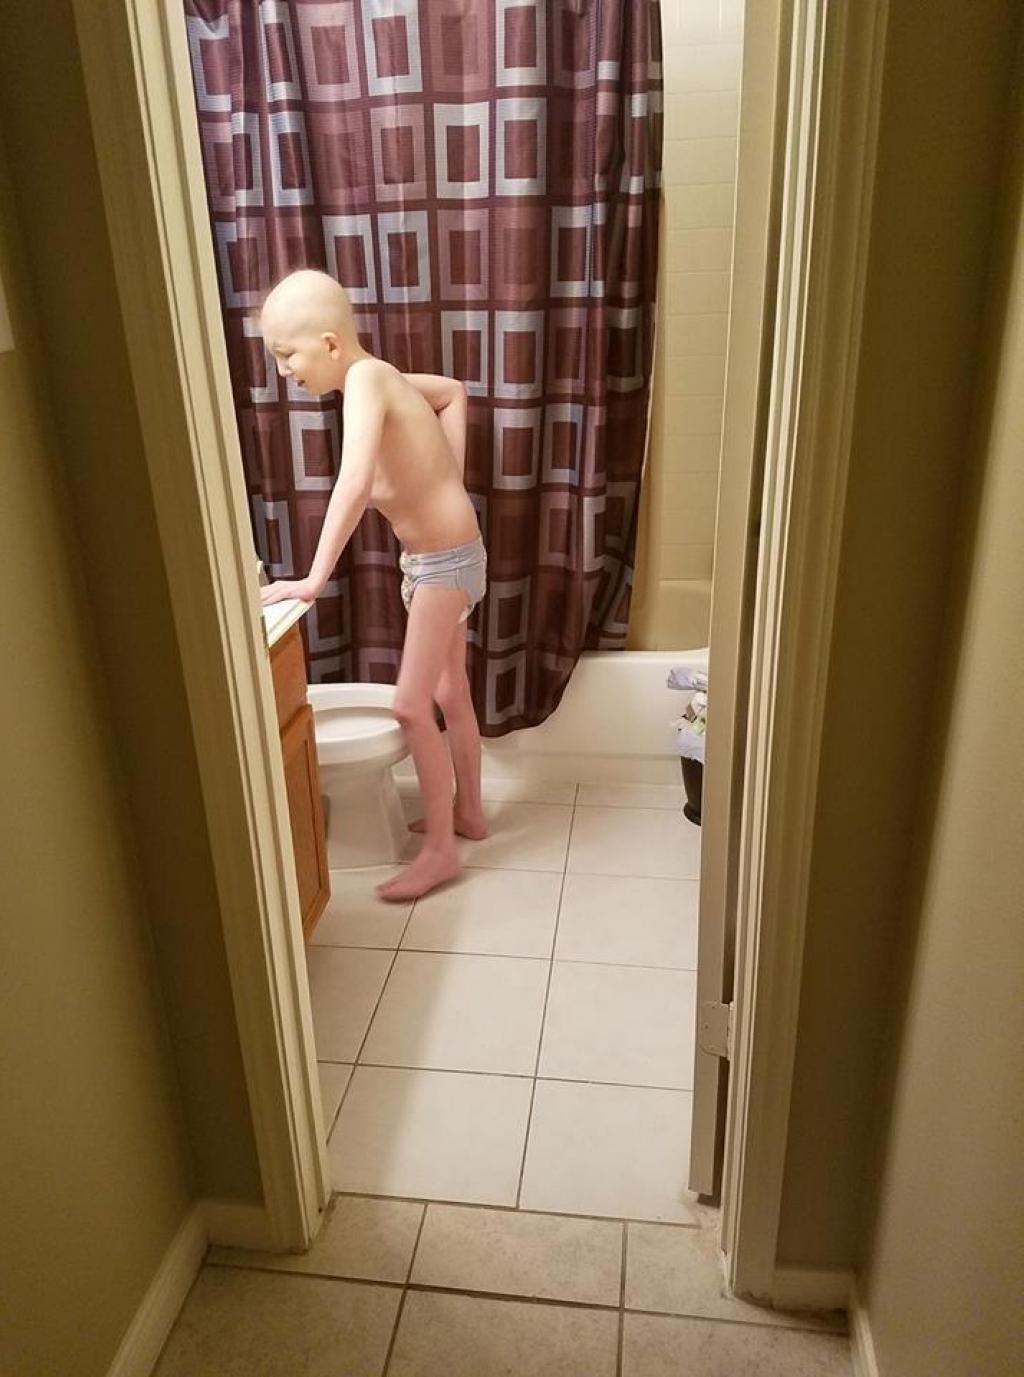 Une maman poste une photo de son fils à la salle de bain...un cliché qui BOULEVERSE le monde entier 1!